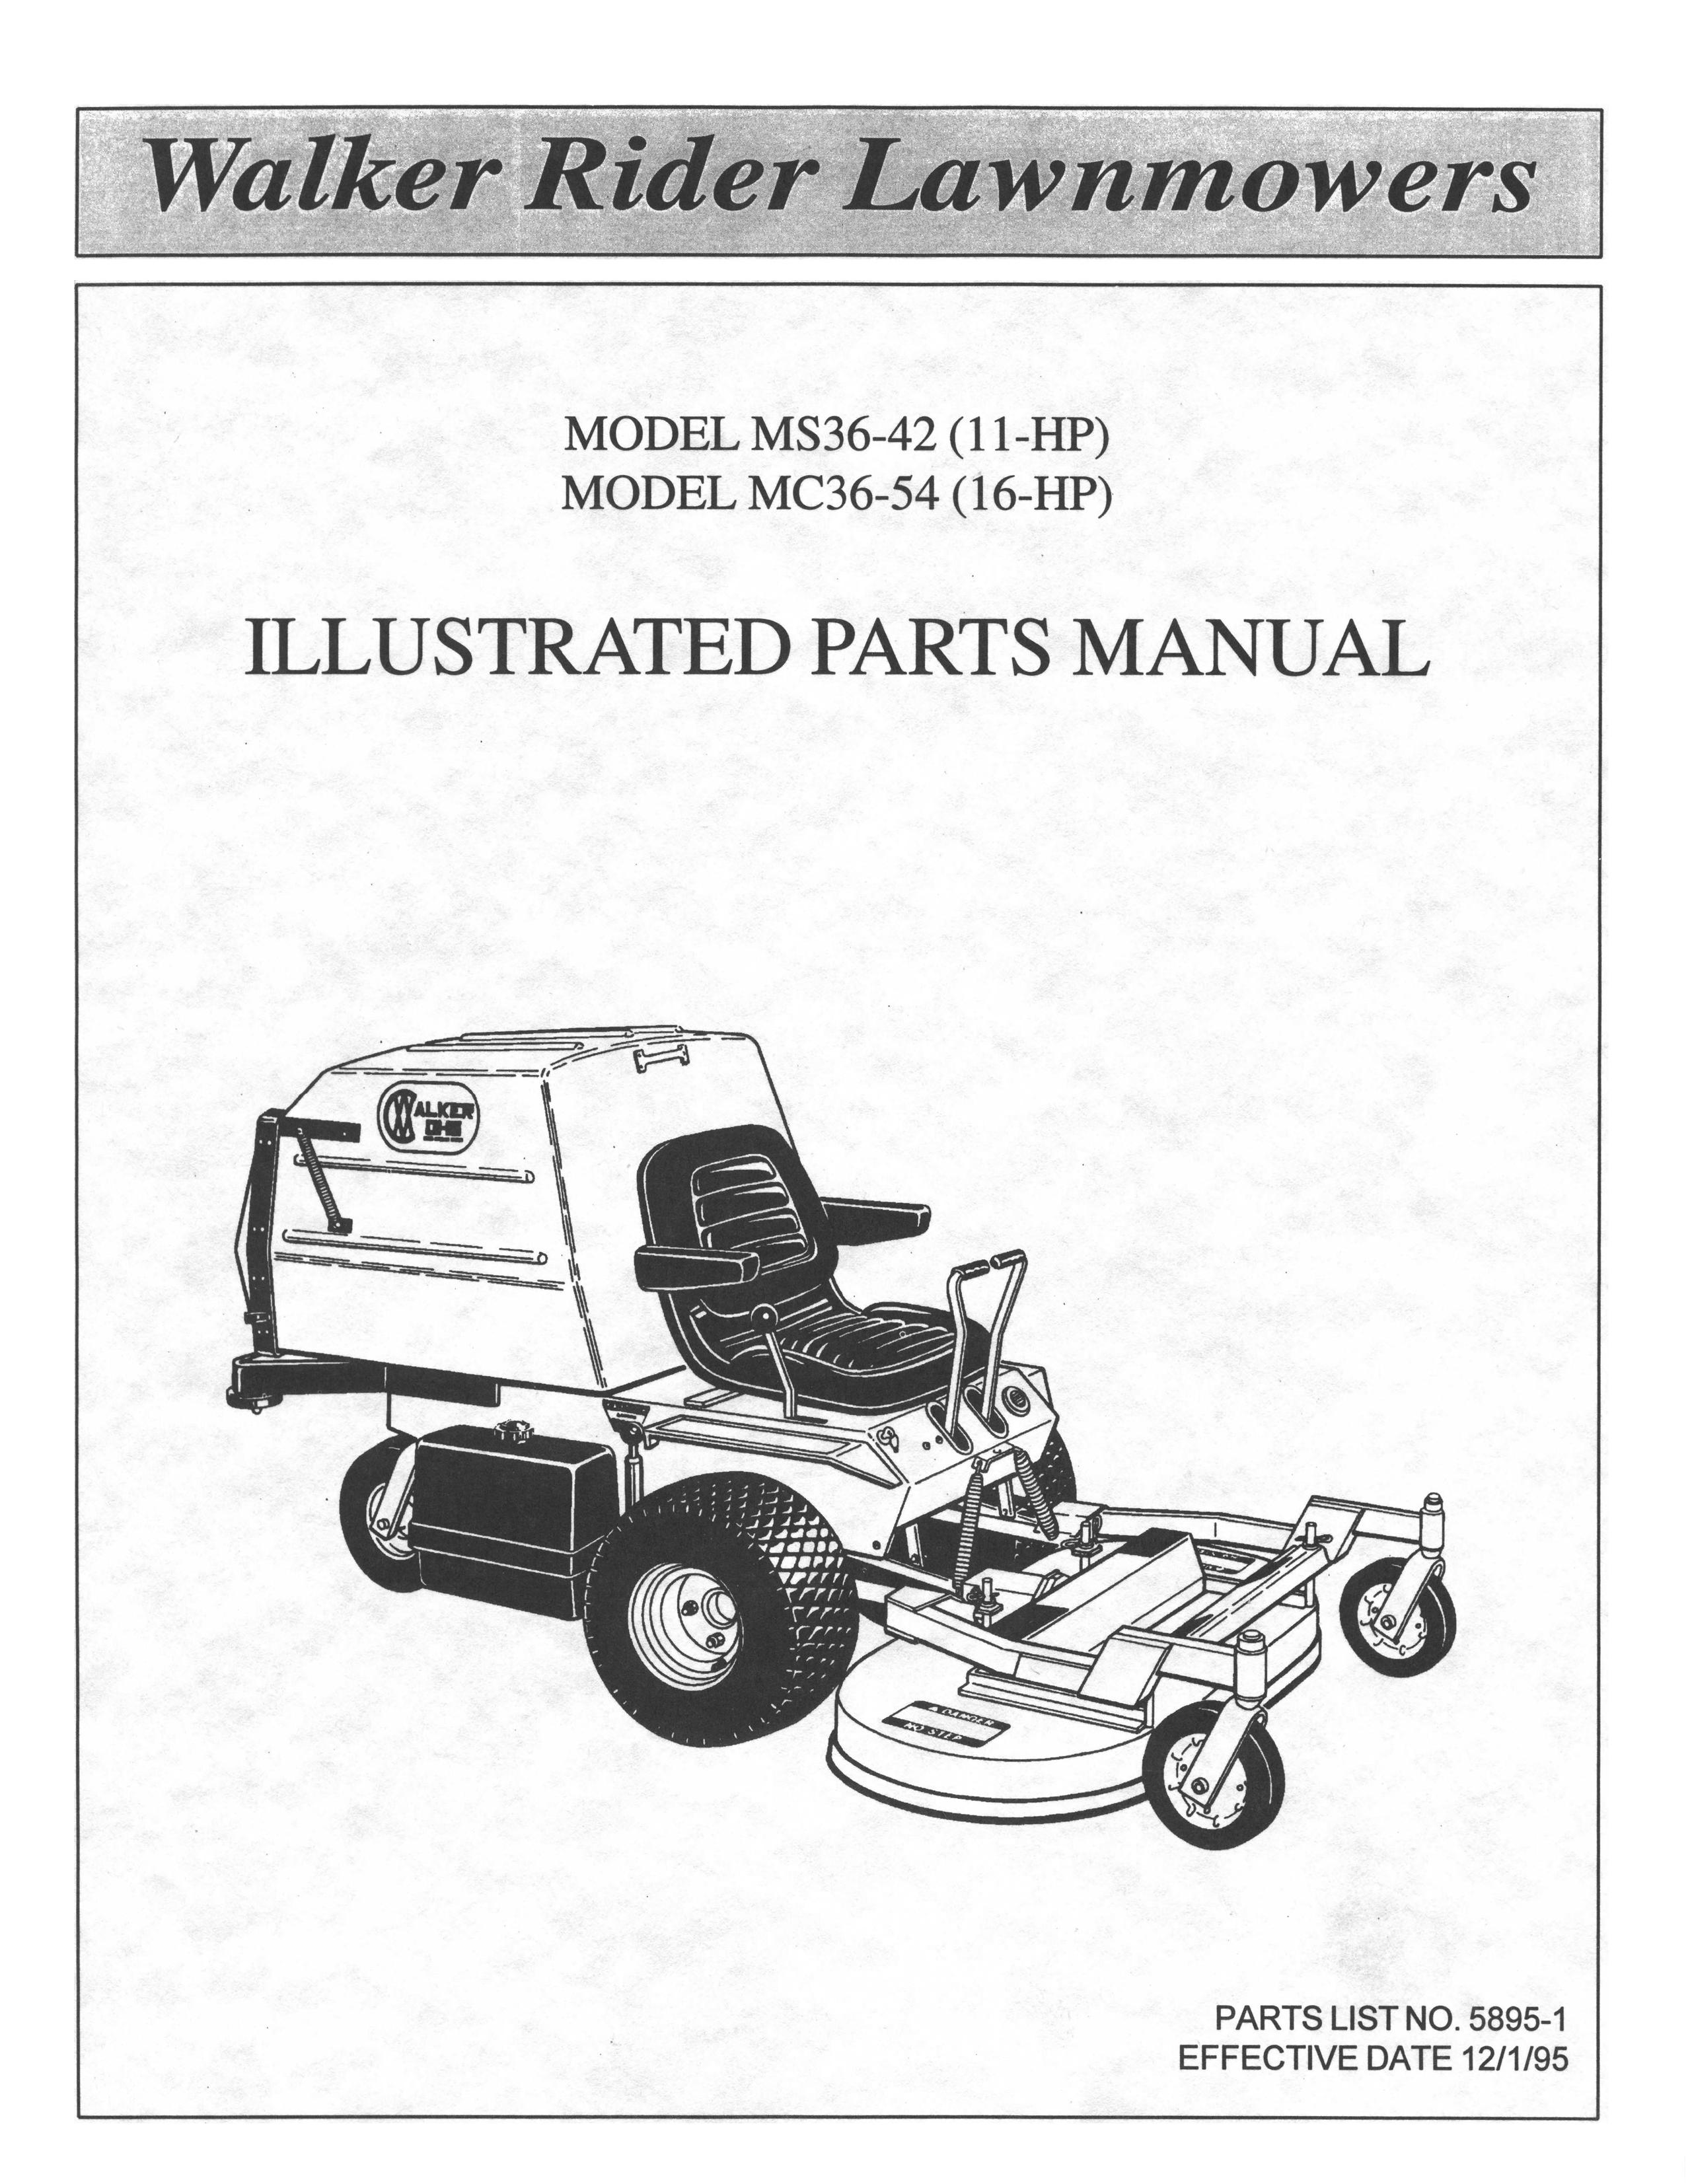 Walker MS36-42 Lawn Mower User Manual